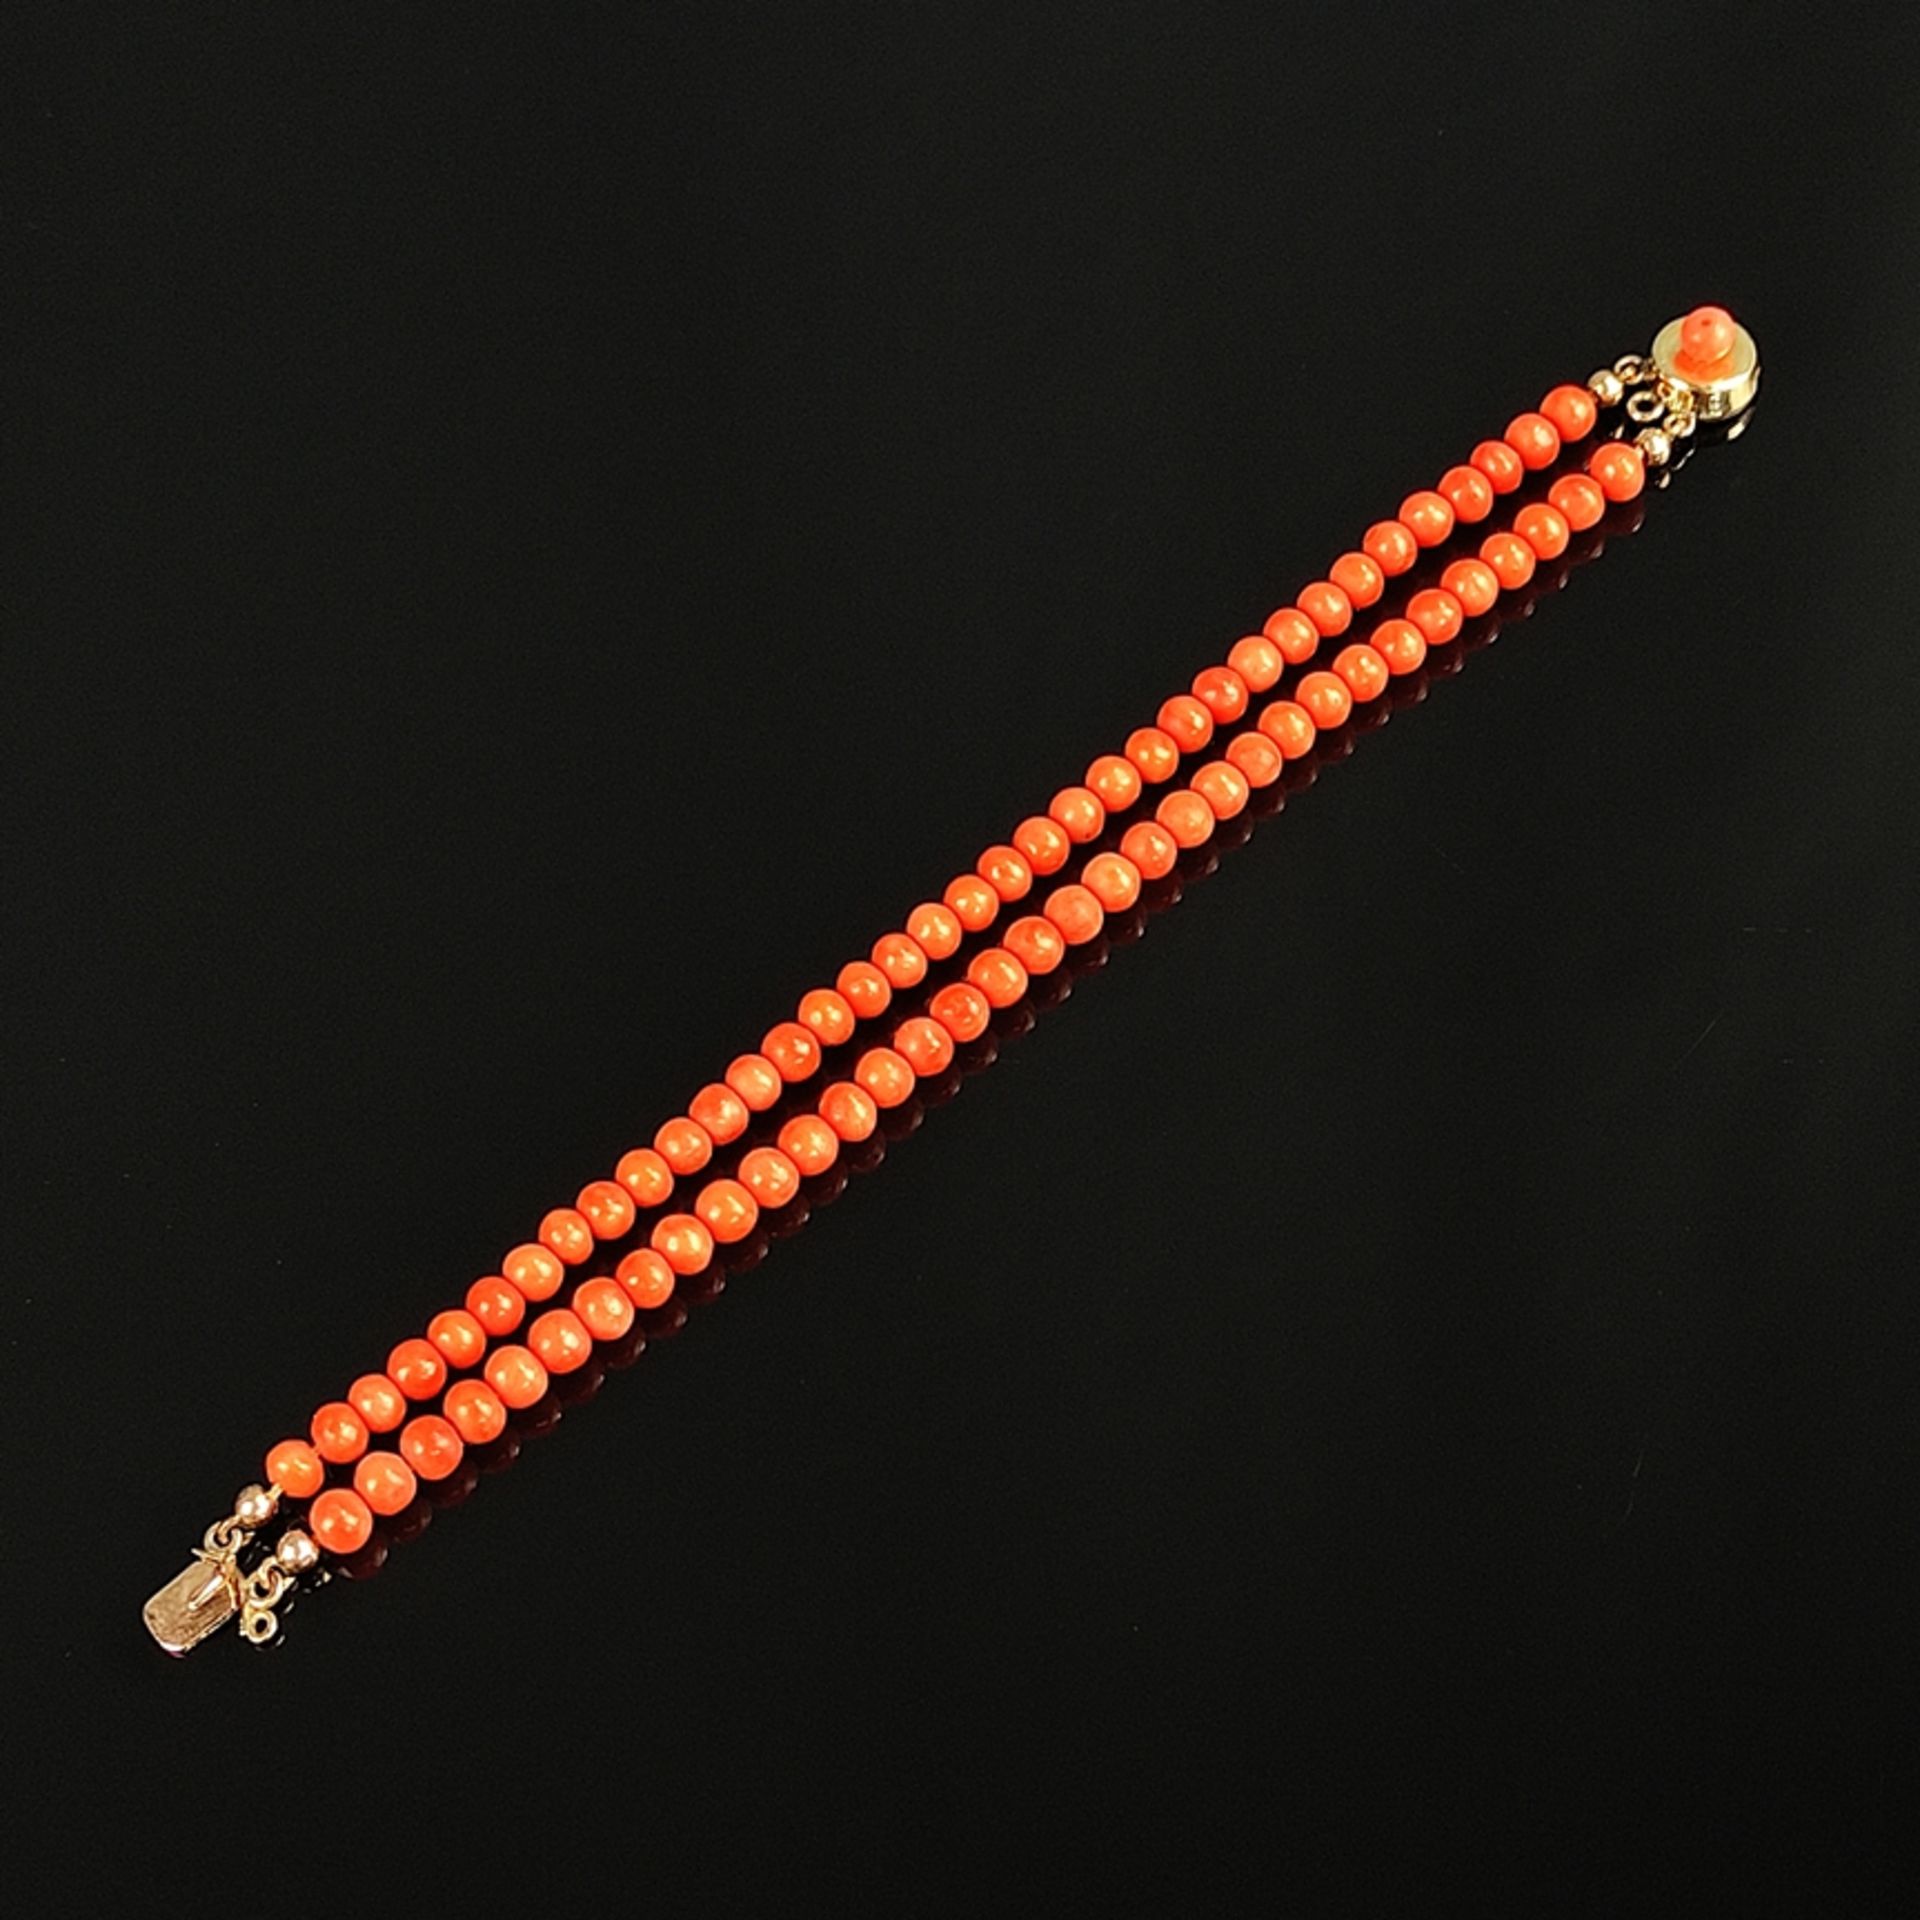 Biedermeier Korallen-Armband, Schaumgold/Golddoublé in 333/8K Vergoldung, 8,7g, zweireihiges Armban - Bild 2 aus 3